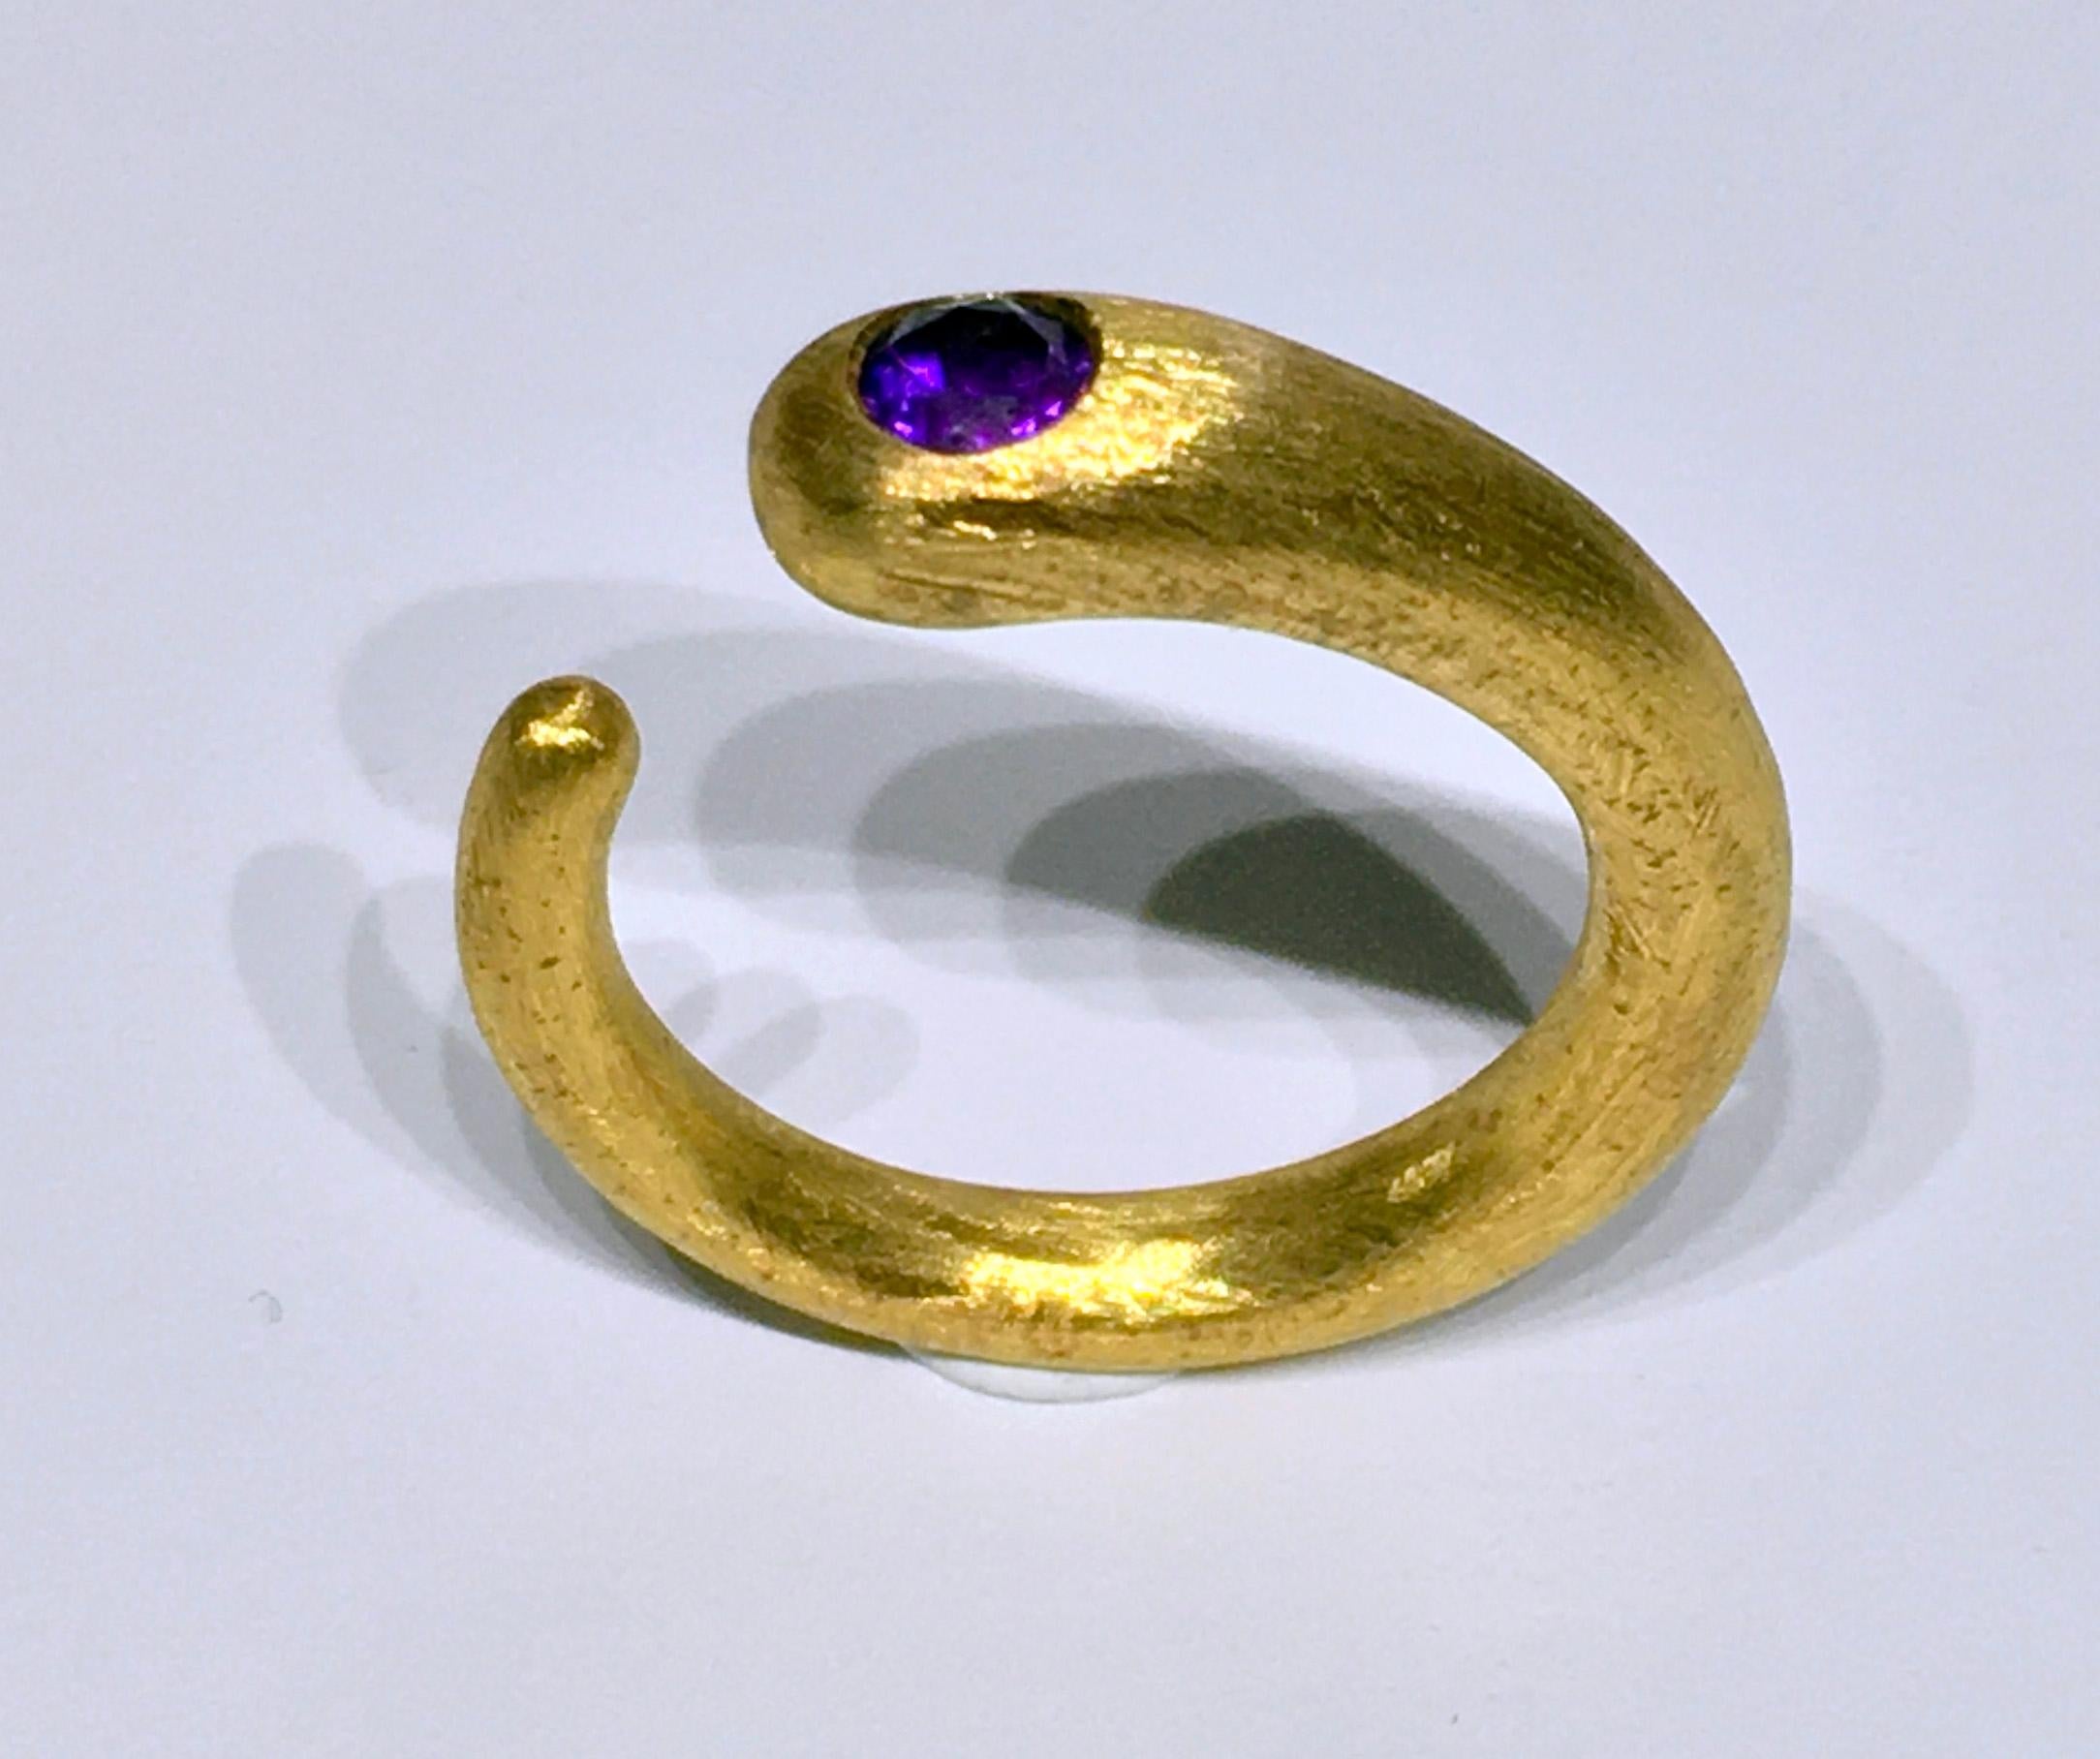 Ein 18kt vergoldet Silber Ring, mit einem Amethyst mit einem gebürsteten Finish gesetzt. Der Ring ist eine Größe 7,25 US und ist Curl Style, leicht auf eine ähnliche Ringgröße anzupassen. Dieser Ring besteht aus 6,5 Gramm vergoldetem Silber und ist